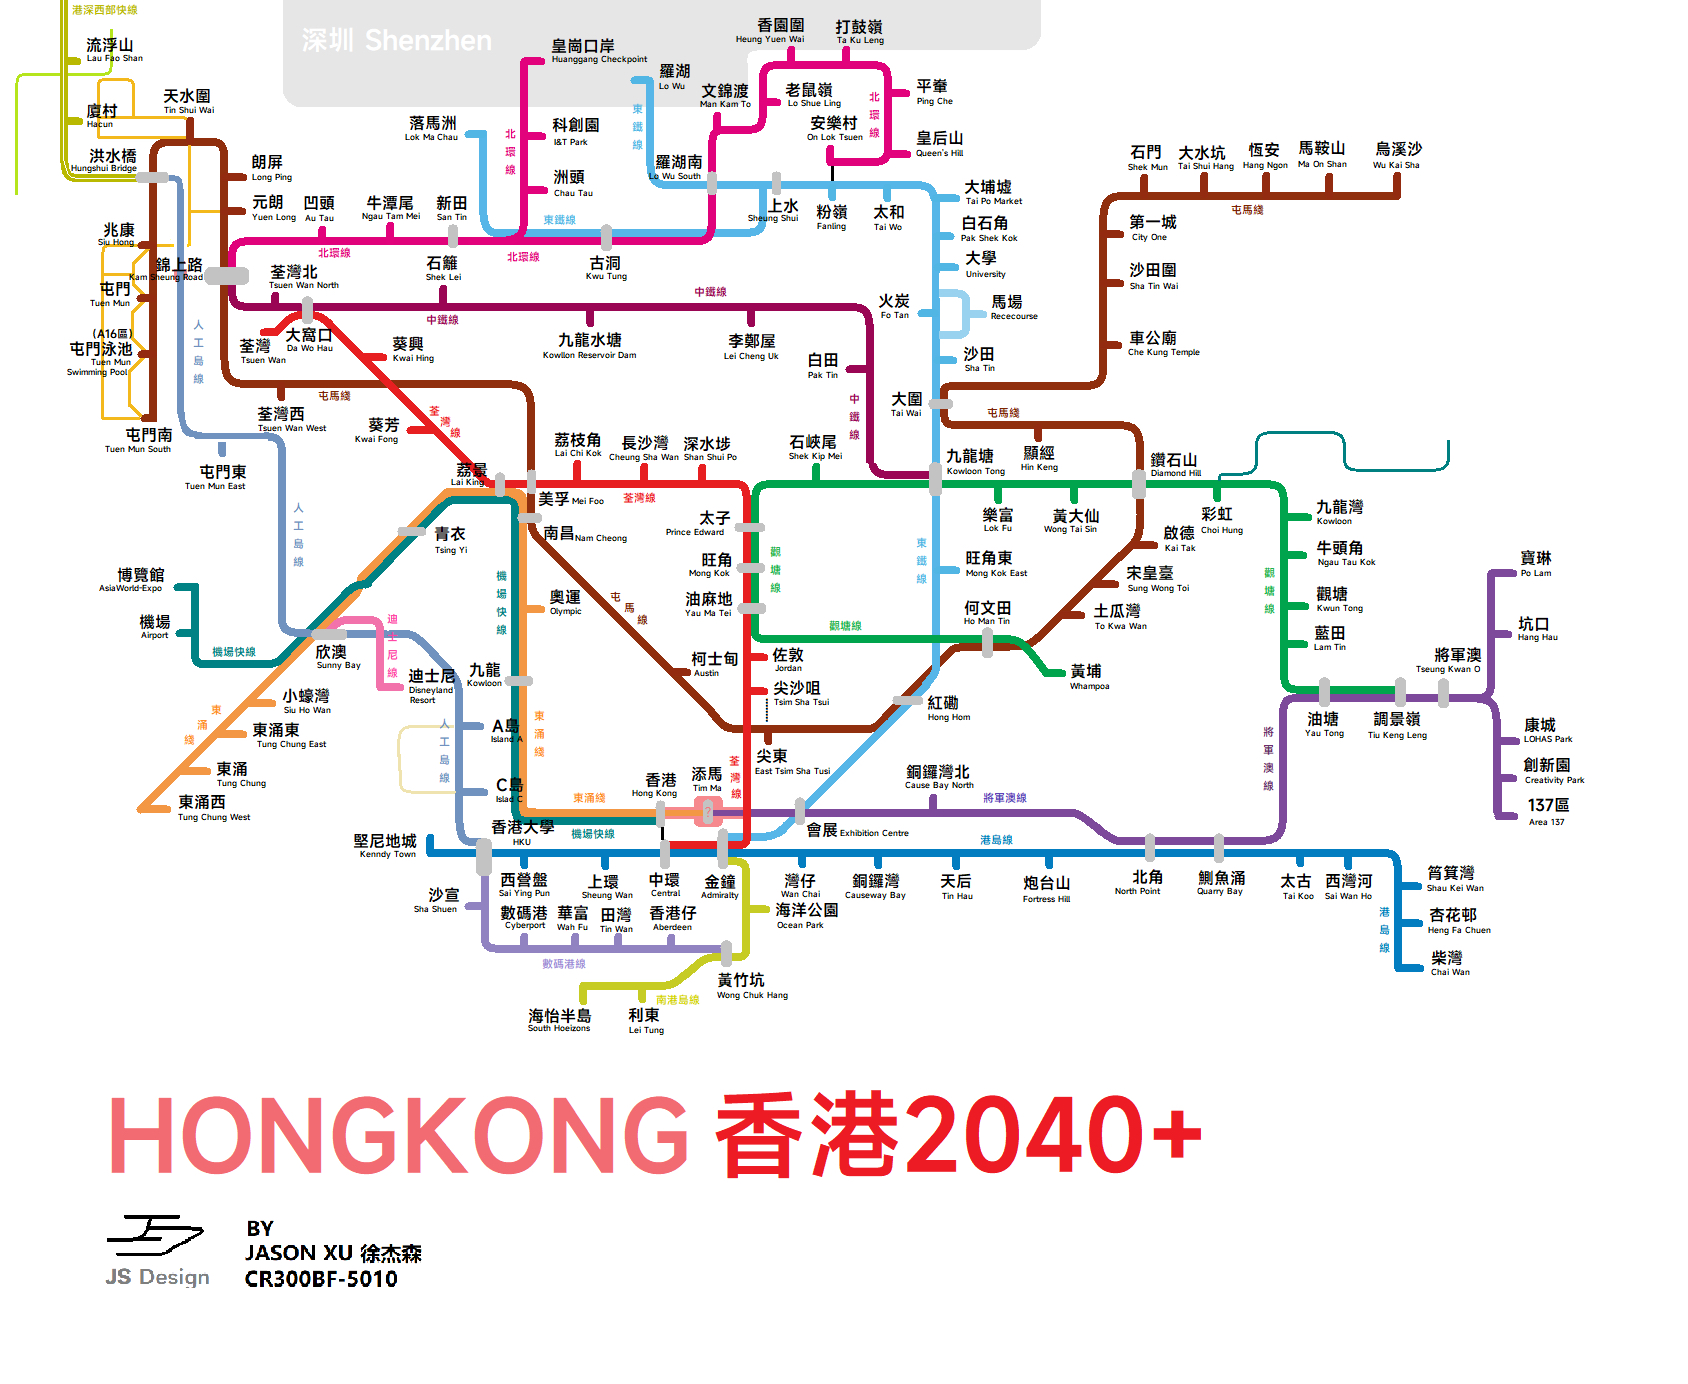 香港地铁路线全图图片_香港地铁路线全图作品 - 9457明星图片网